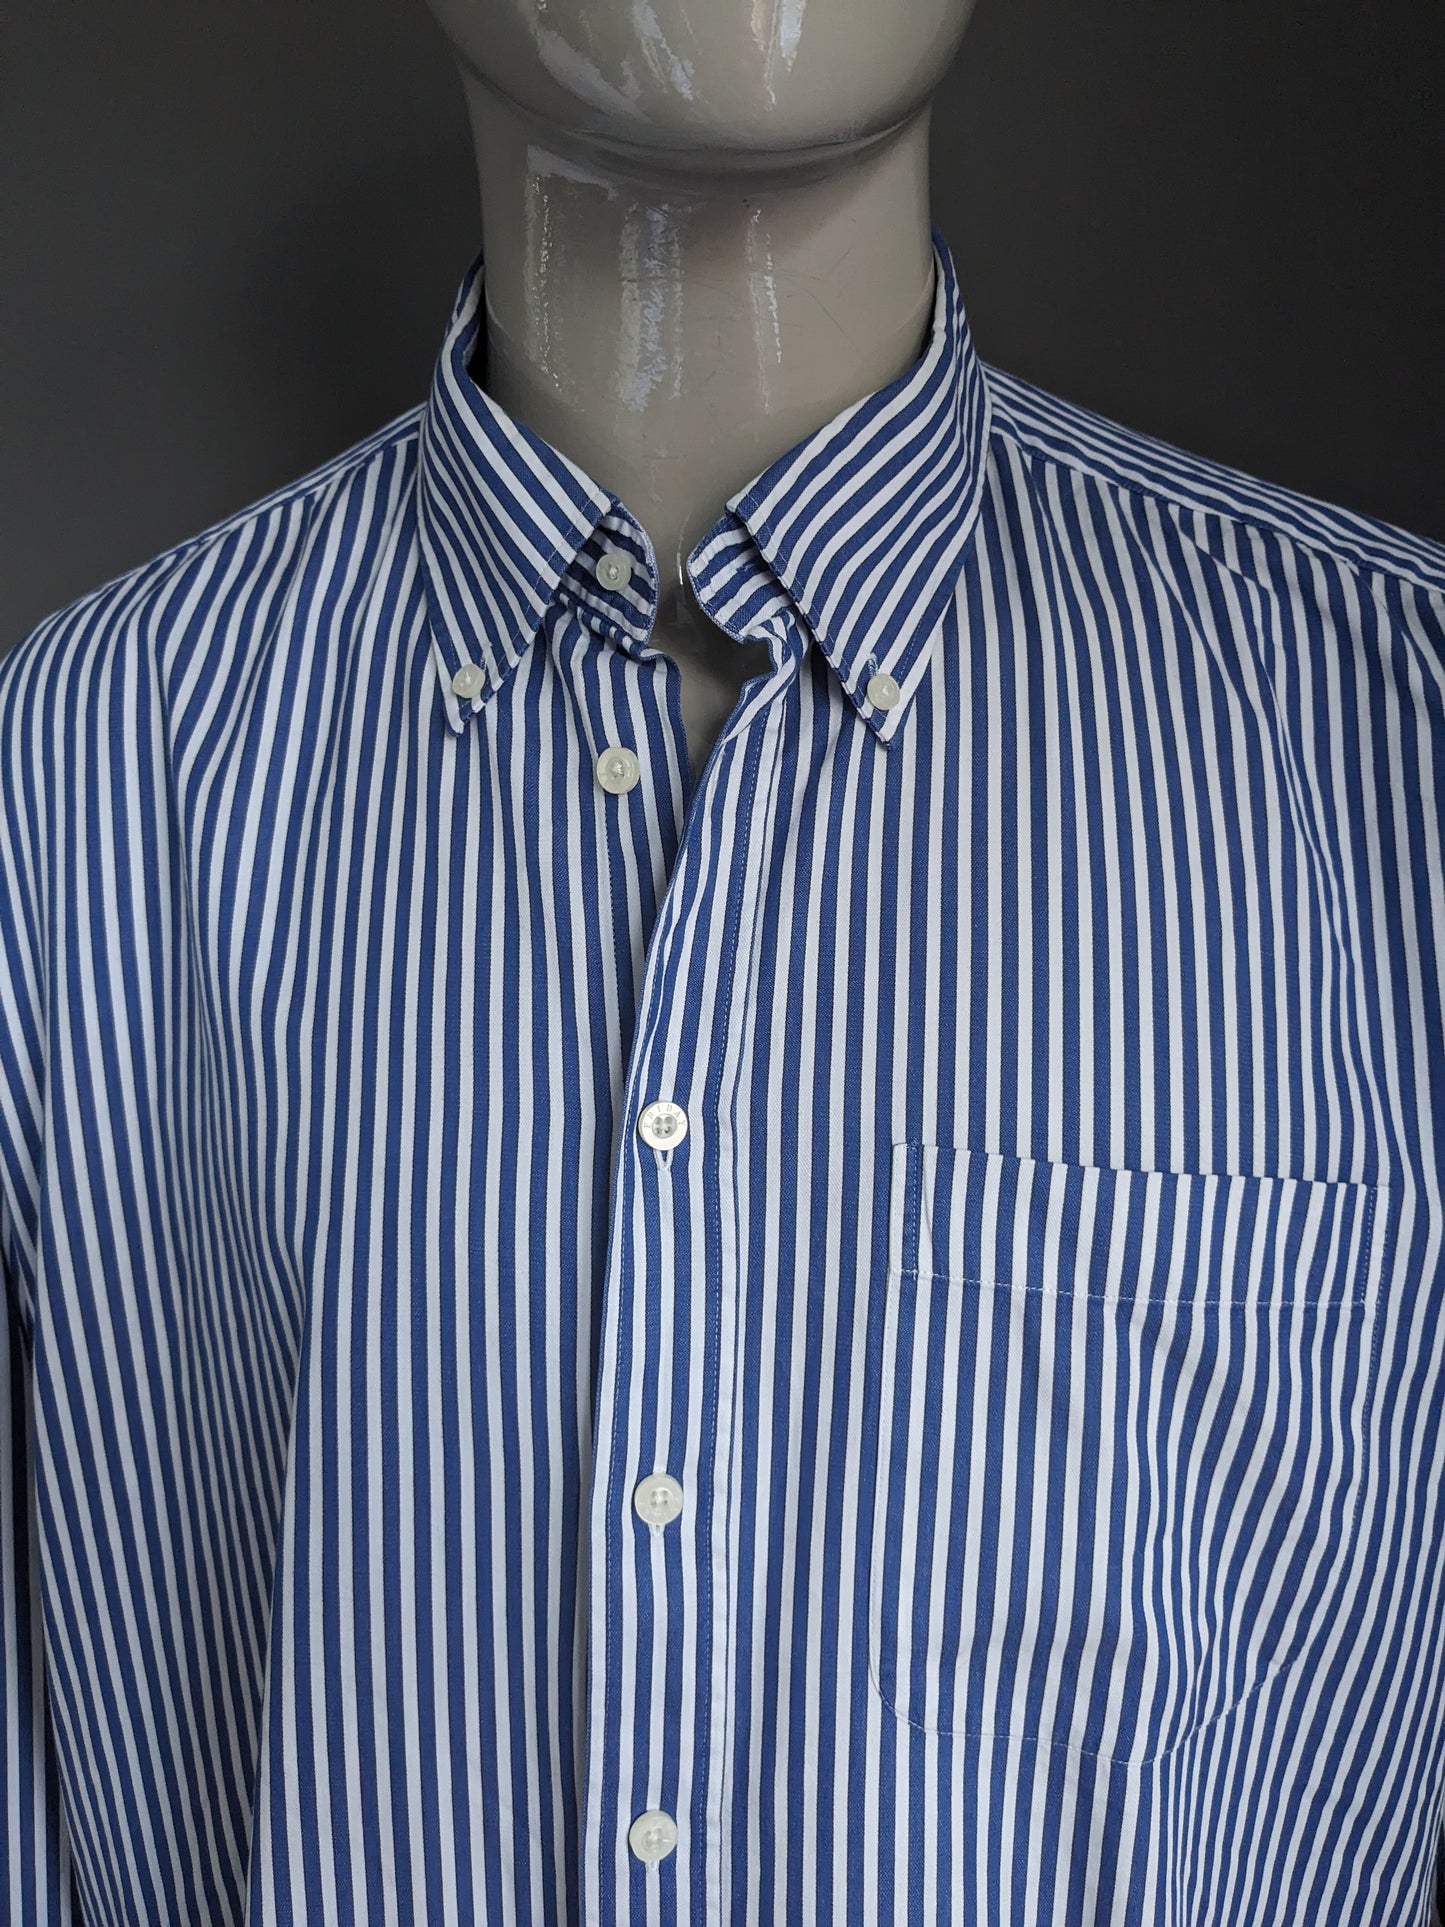 Adam Friday shirt. Blue white striped. Size 3XL / XXXL.